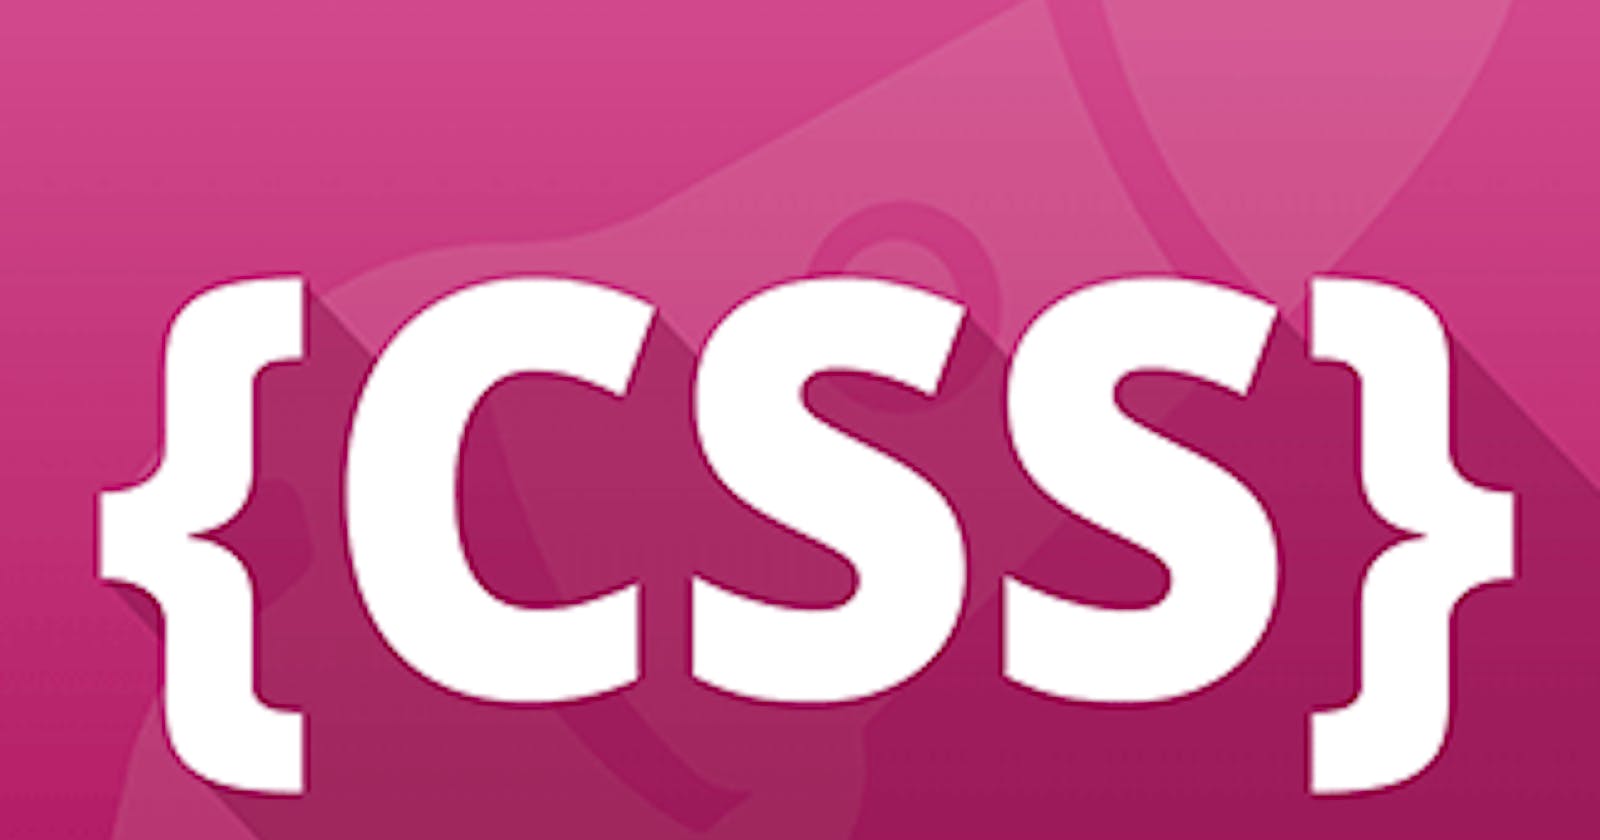 Understand CSS Selectors